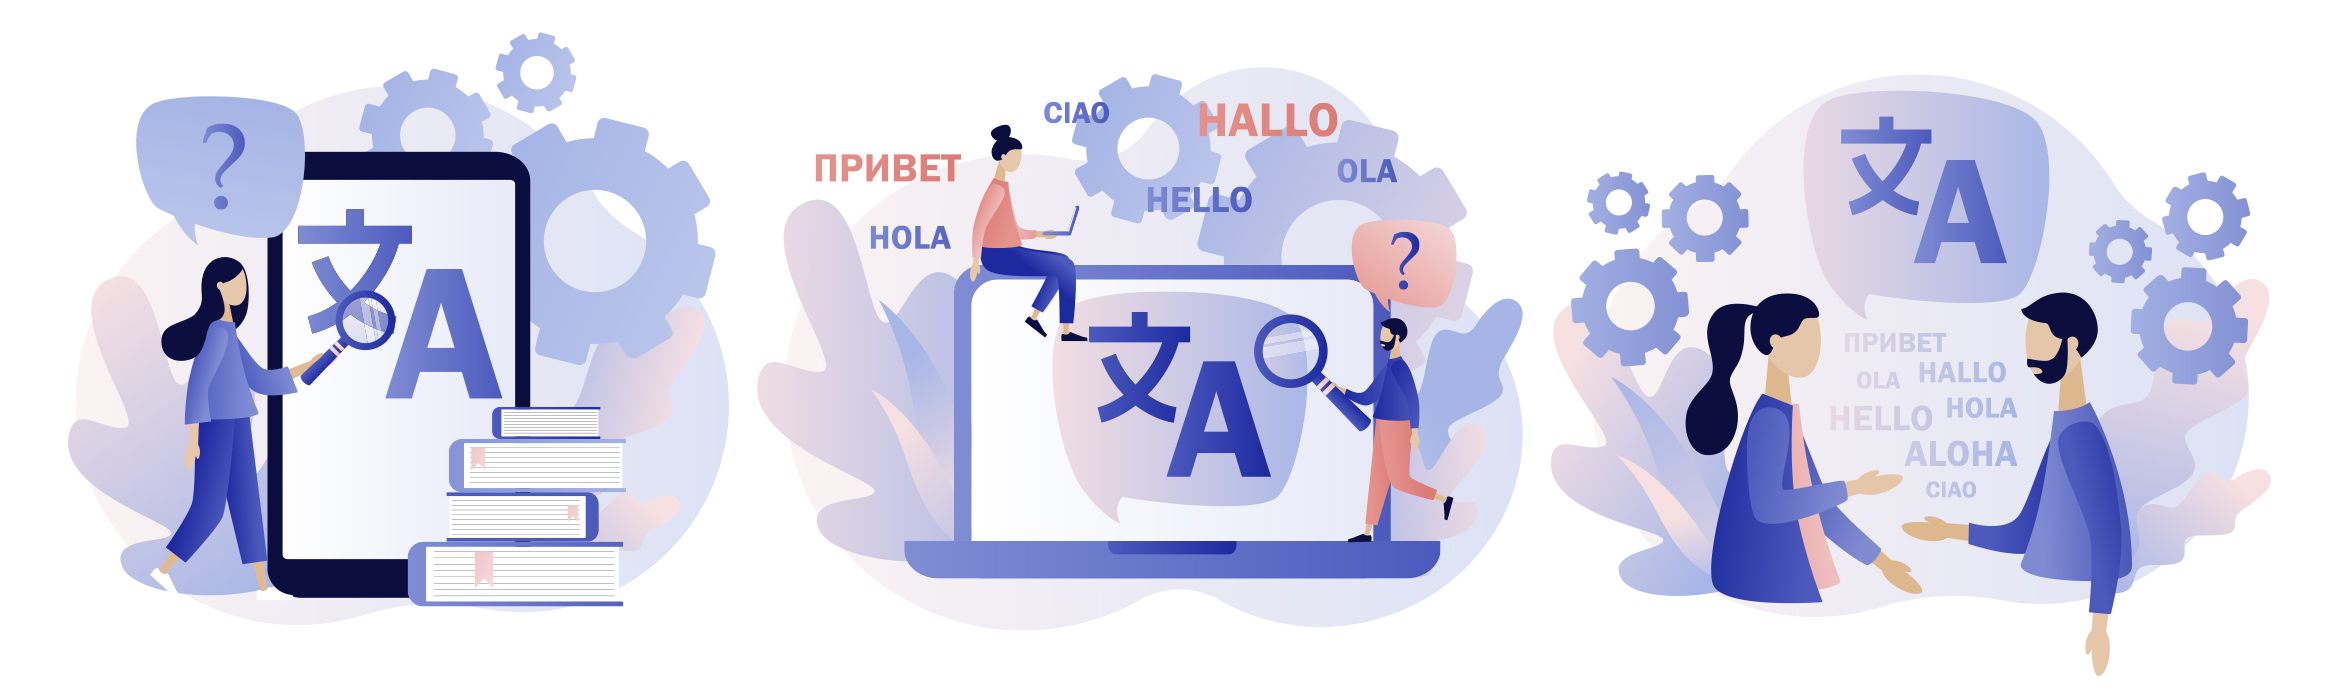 Dibujos de dispositivos electrónicos, personas, con caracteres en distintos idiomas